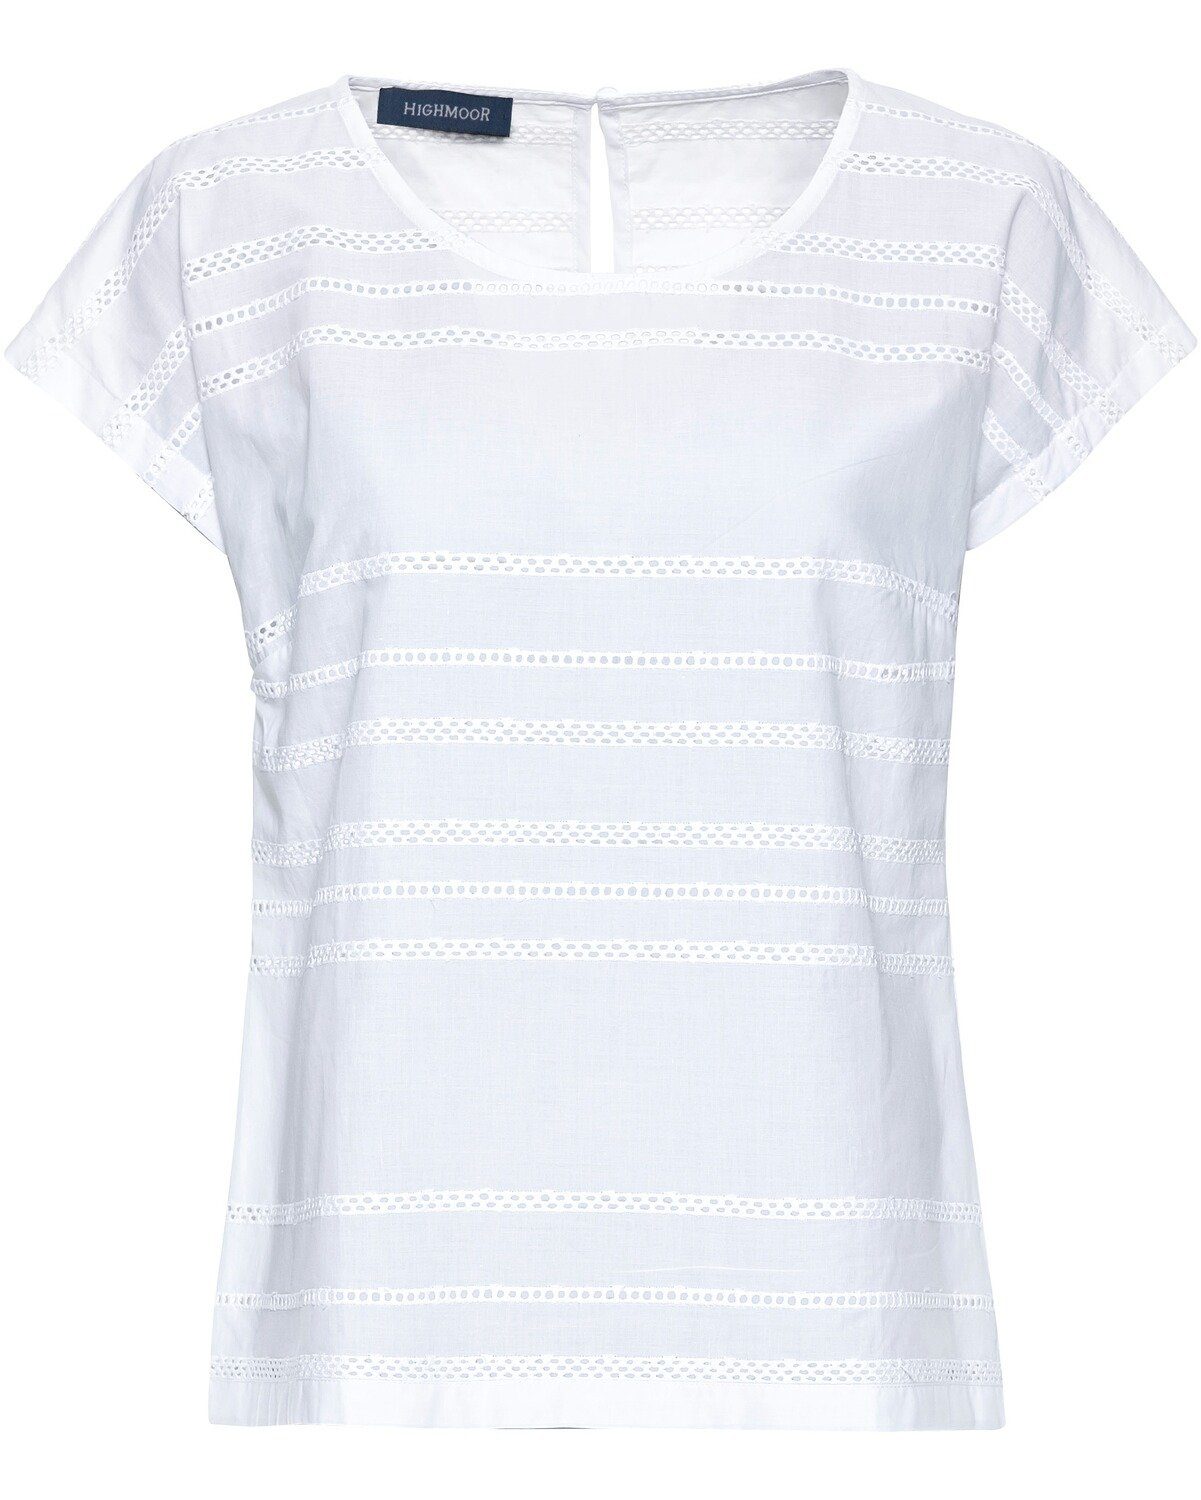 Weiße Blusenshirts online kaufen | OTTO